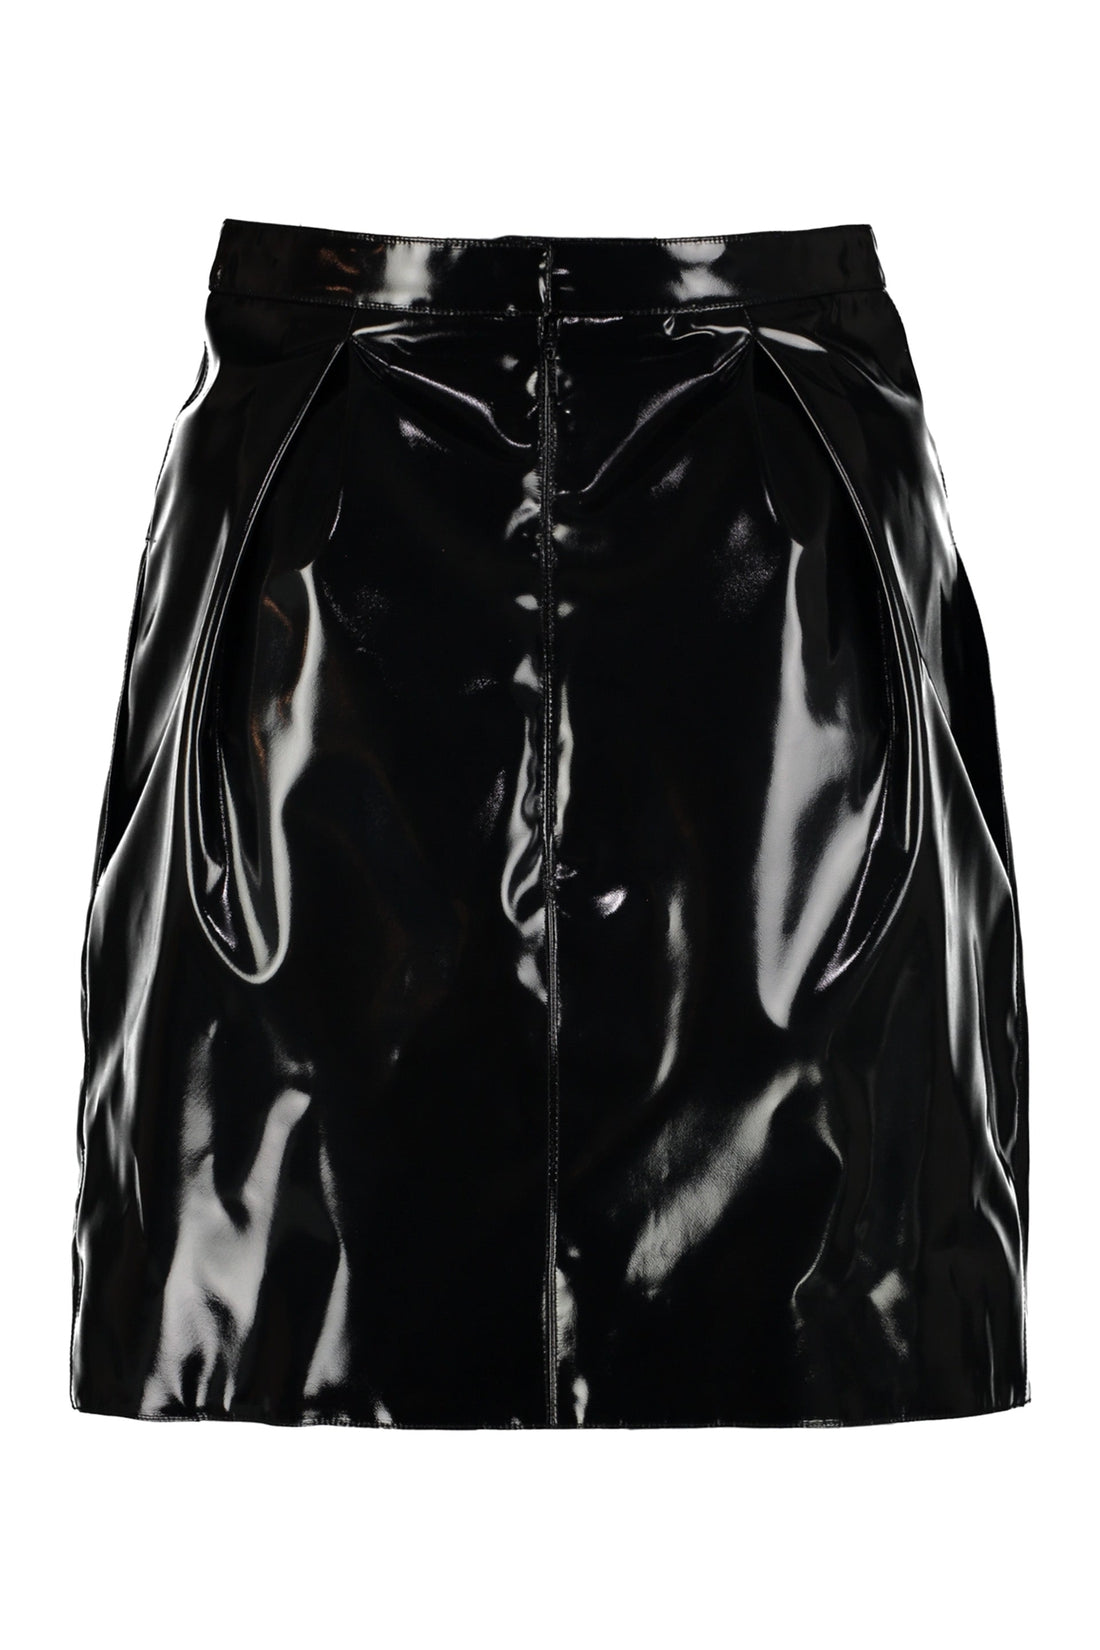 Versace-OUTLET-SALE-Faux leather mini skirt-ARCHIVIST